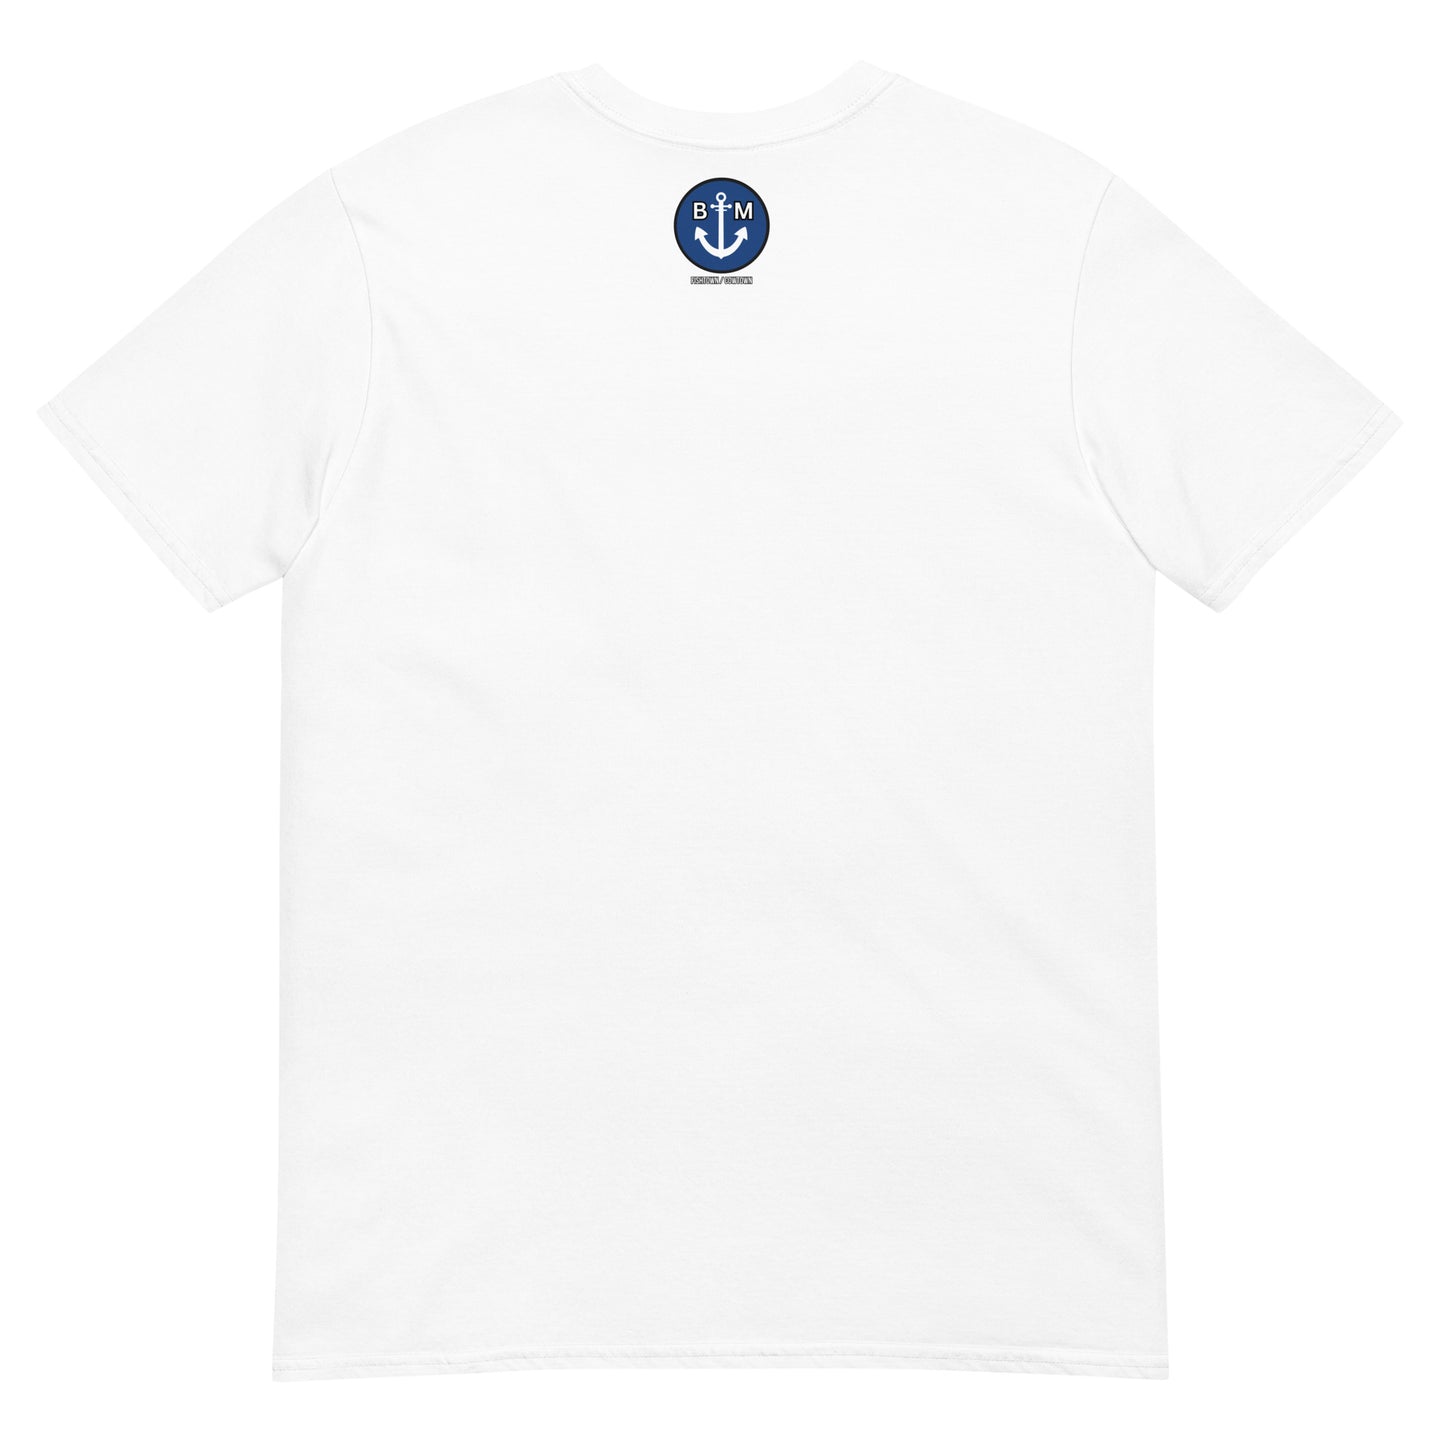 BRIXHAM BM Trawler Short-Sleeve Unisex T-Shirt back with BM logo white